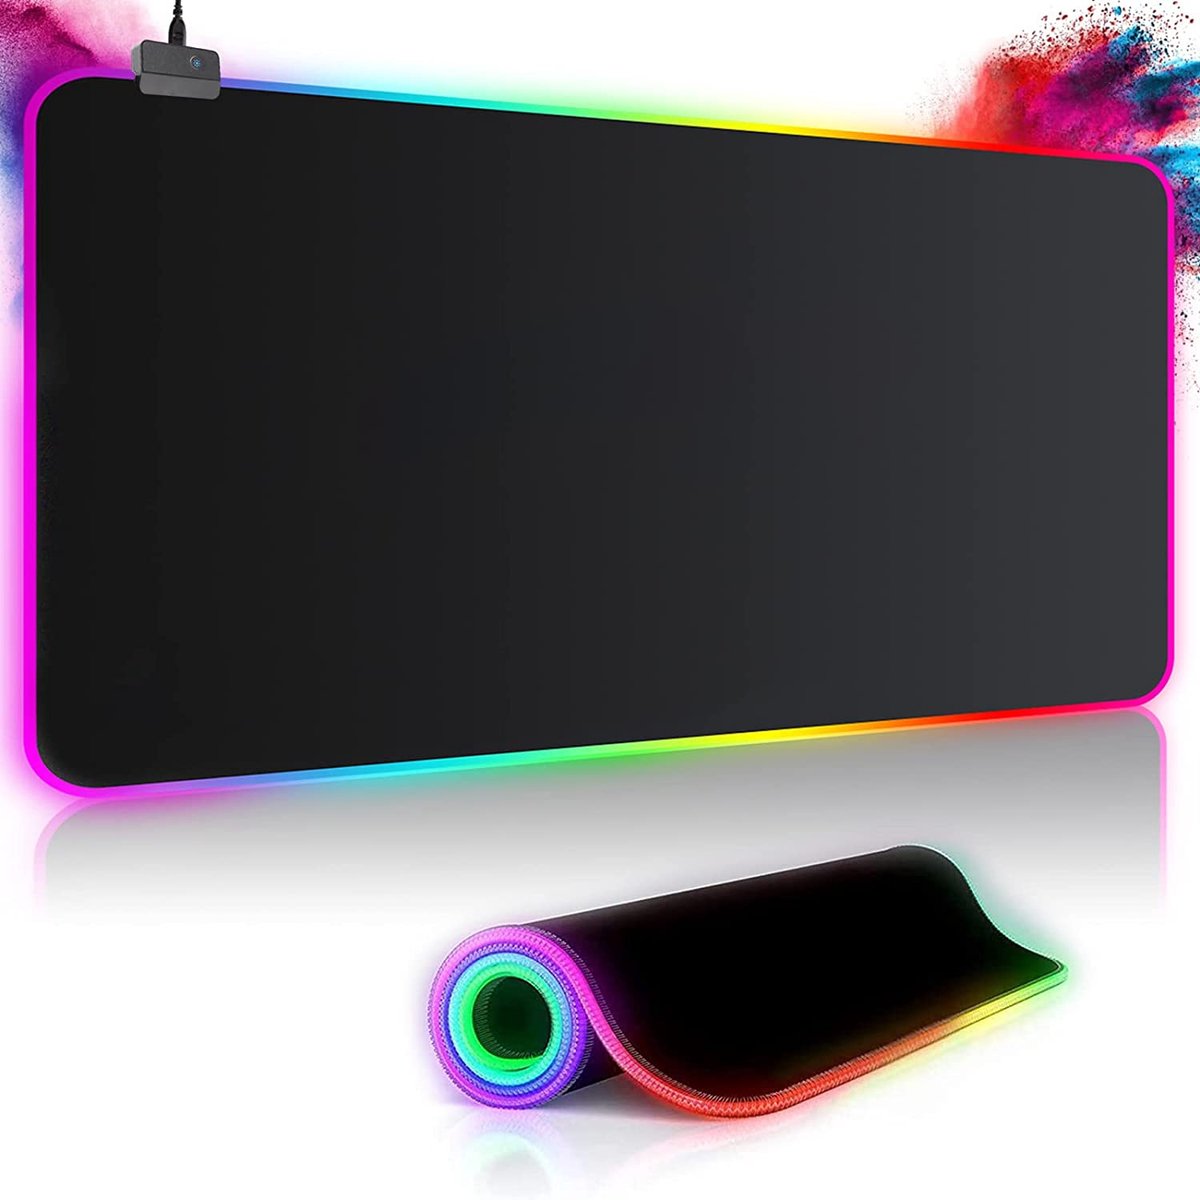 EDMONDO Gaming Muismat - XXL muismat - RGB LED verlichtingmuismat - Draadloze Oplader - Muismat 80 x 30 - Antislip - Antislipmat - Zwart